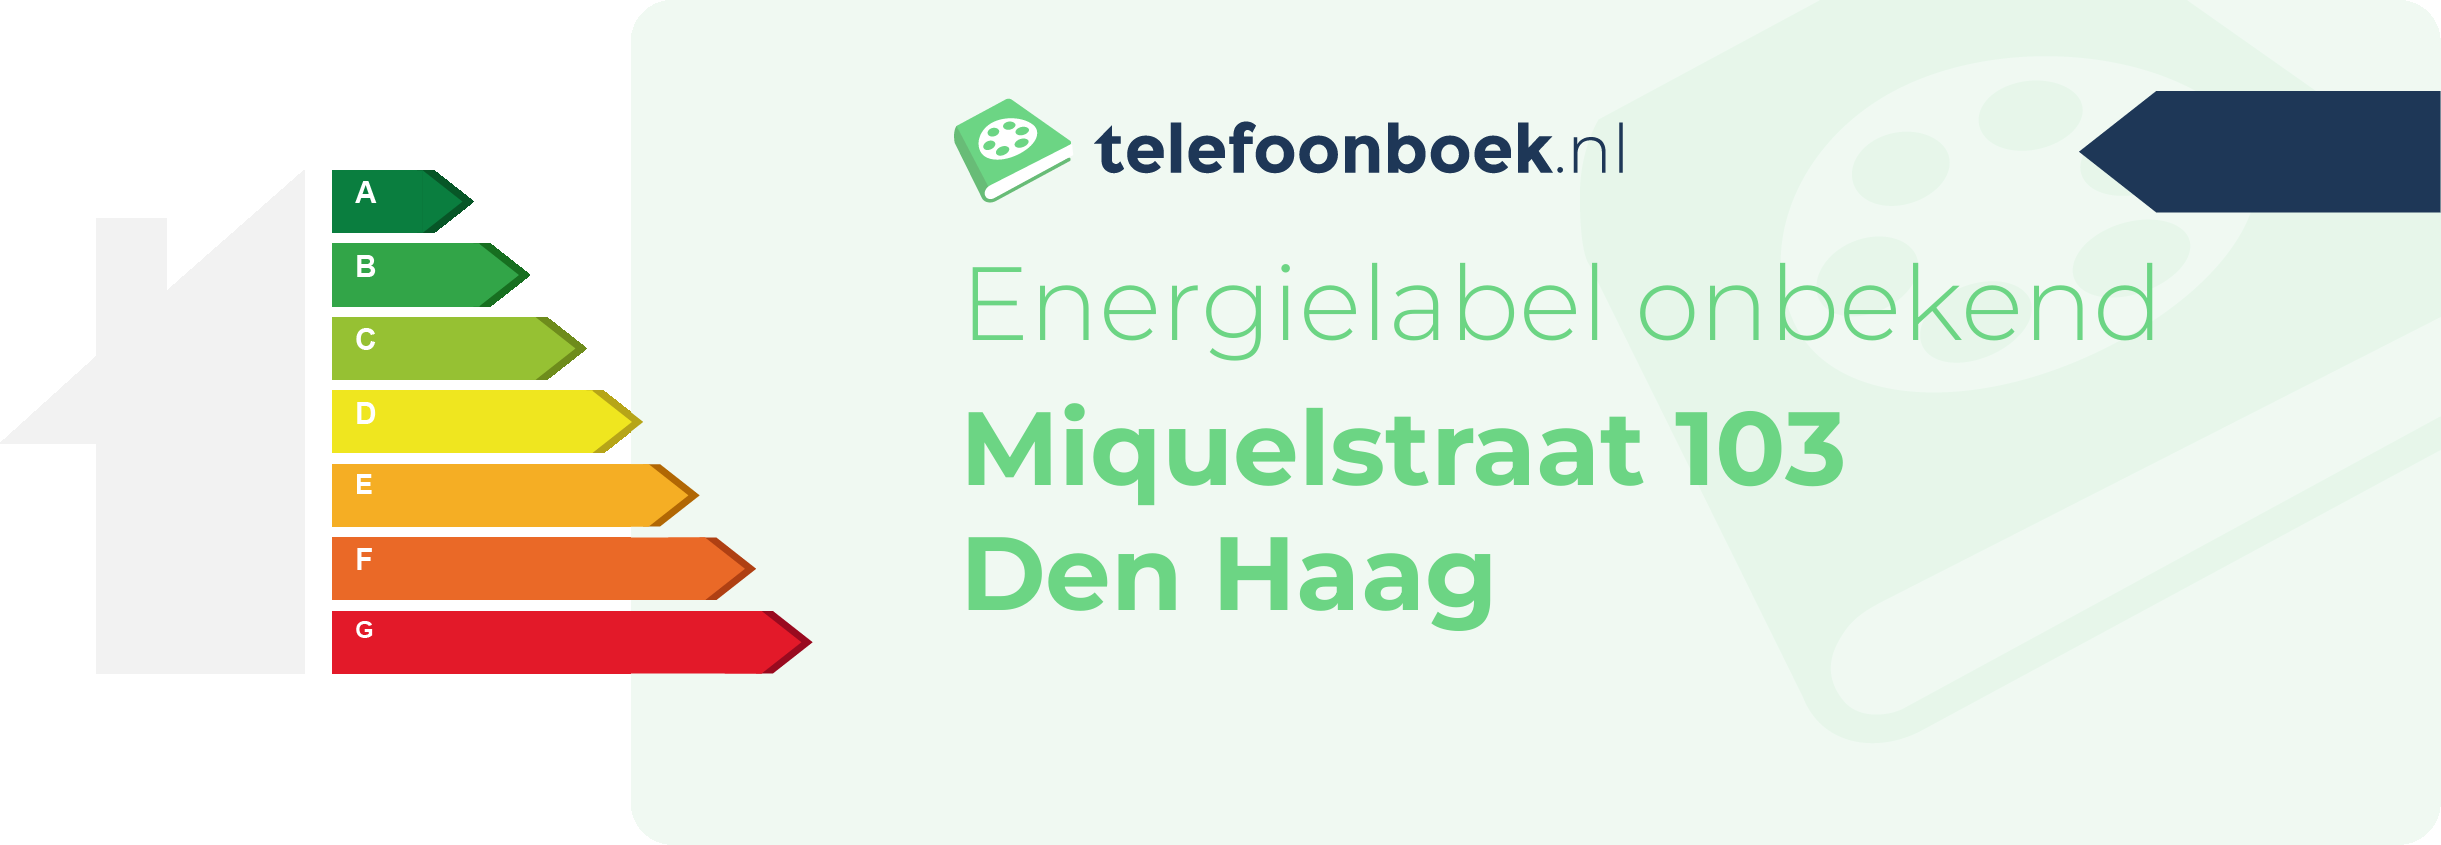 Energielabel Miquelstraat 103 Den Haag